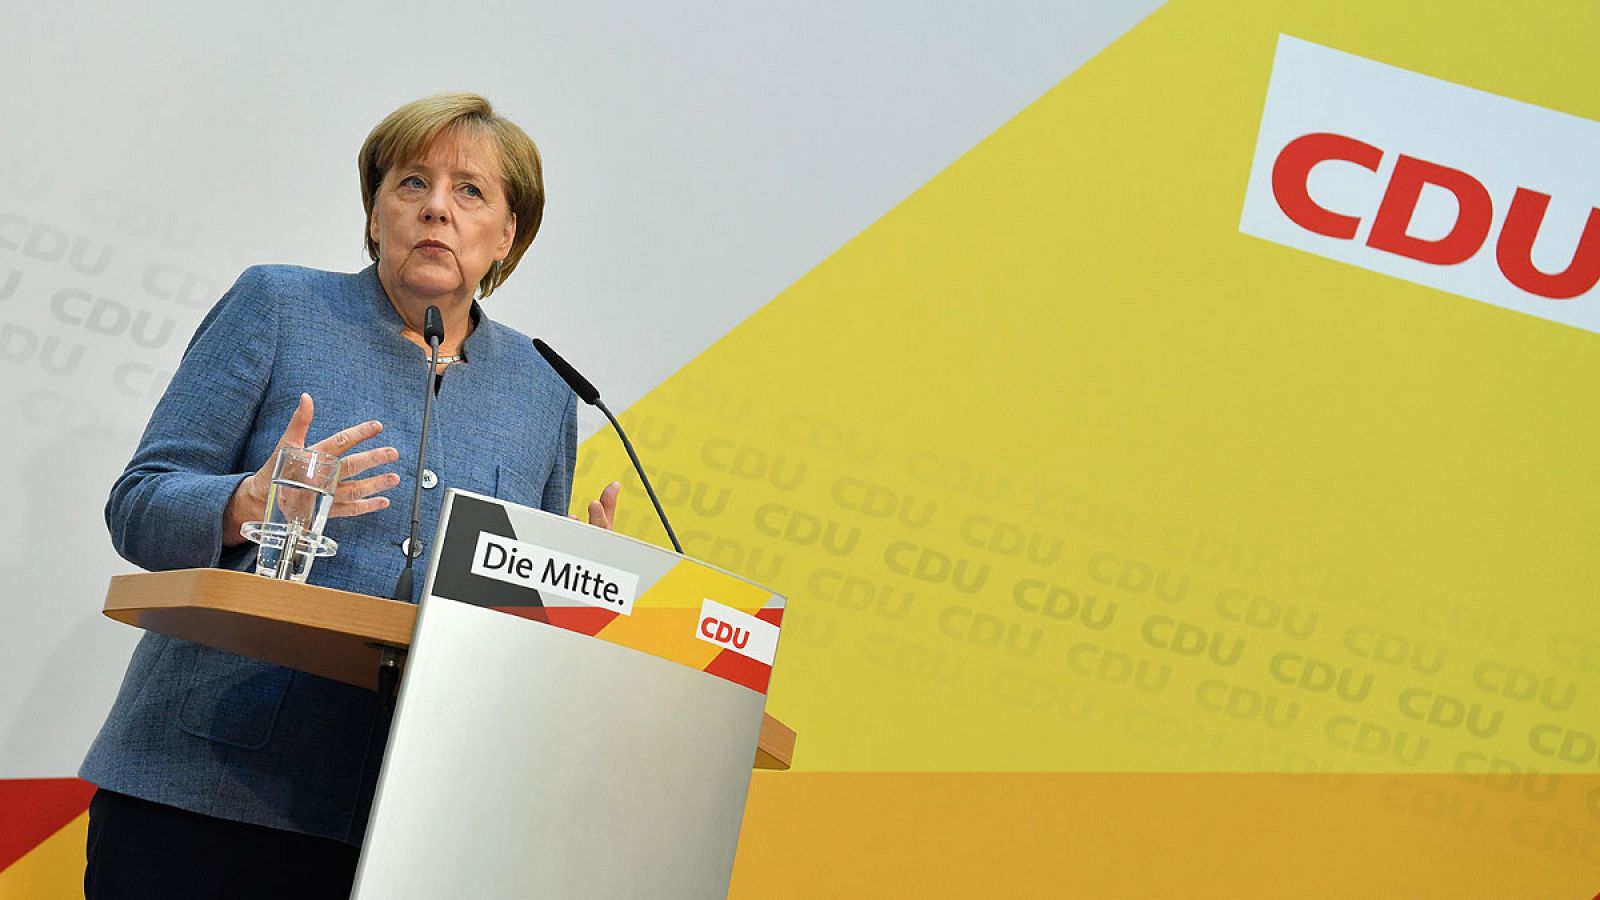 Merkel iniciará el 18 de octubre las conversaciones para formar gobierno